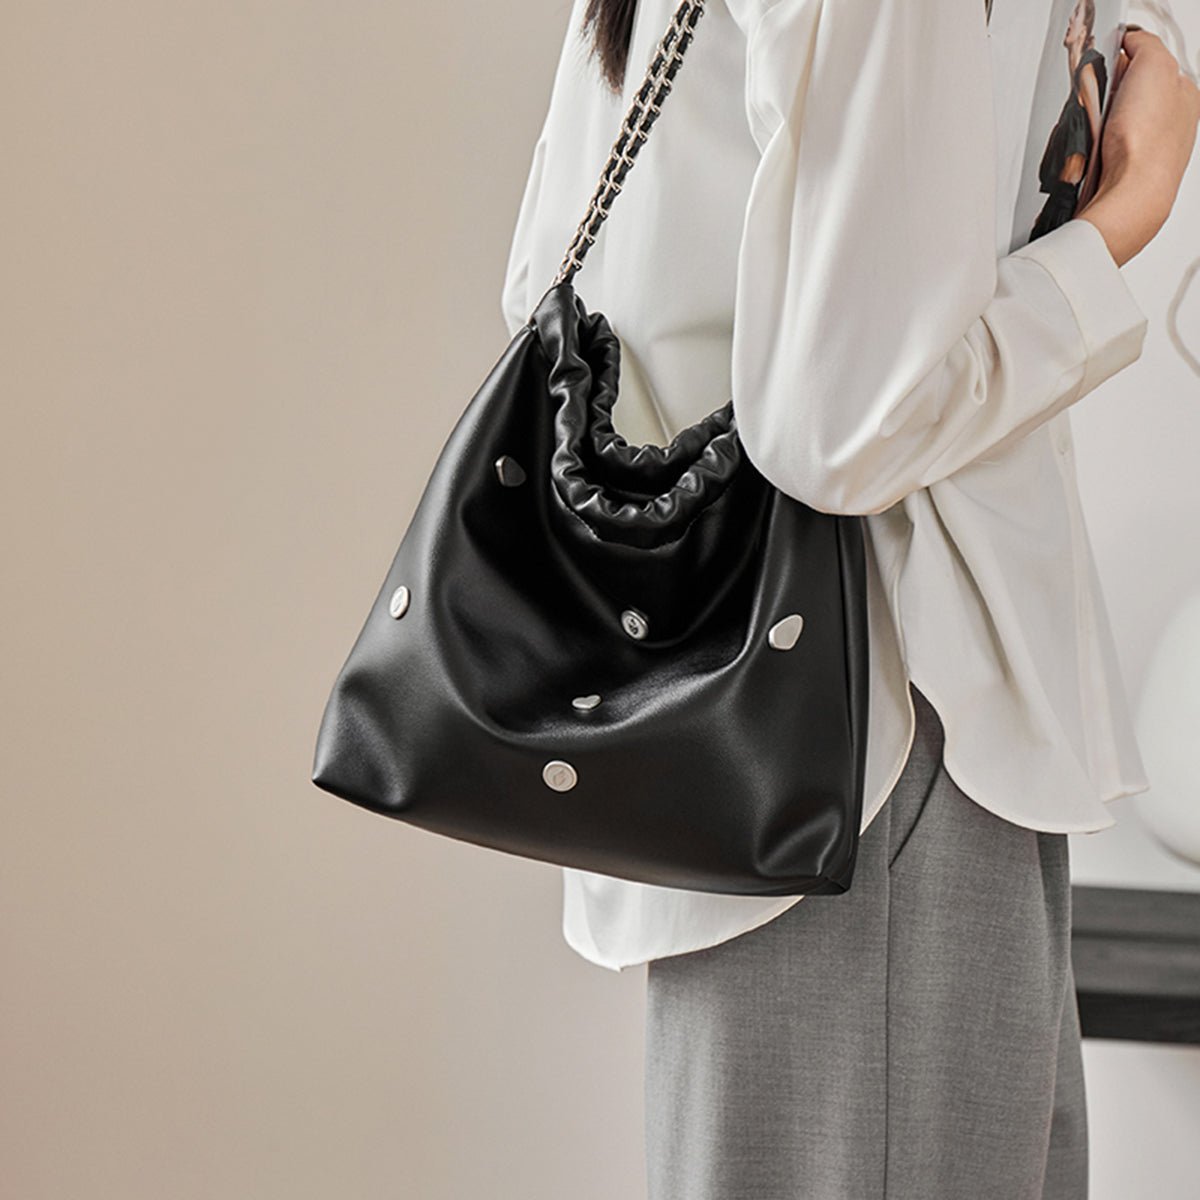 Black Rivet Studded Leather Tote Bag - 0cm